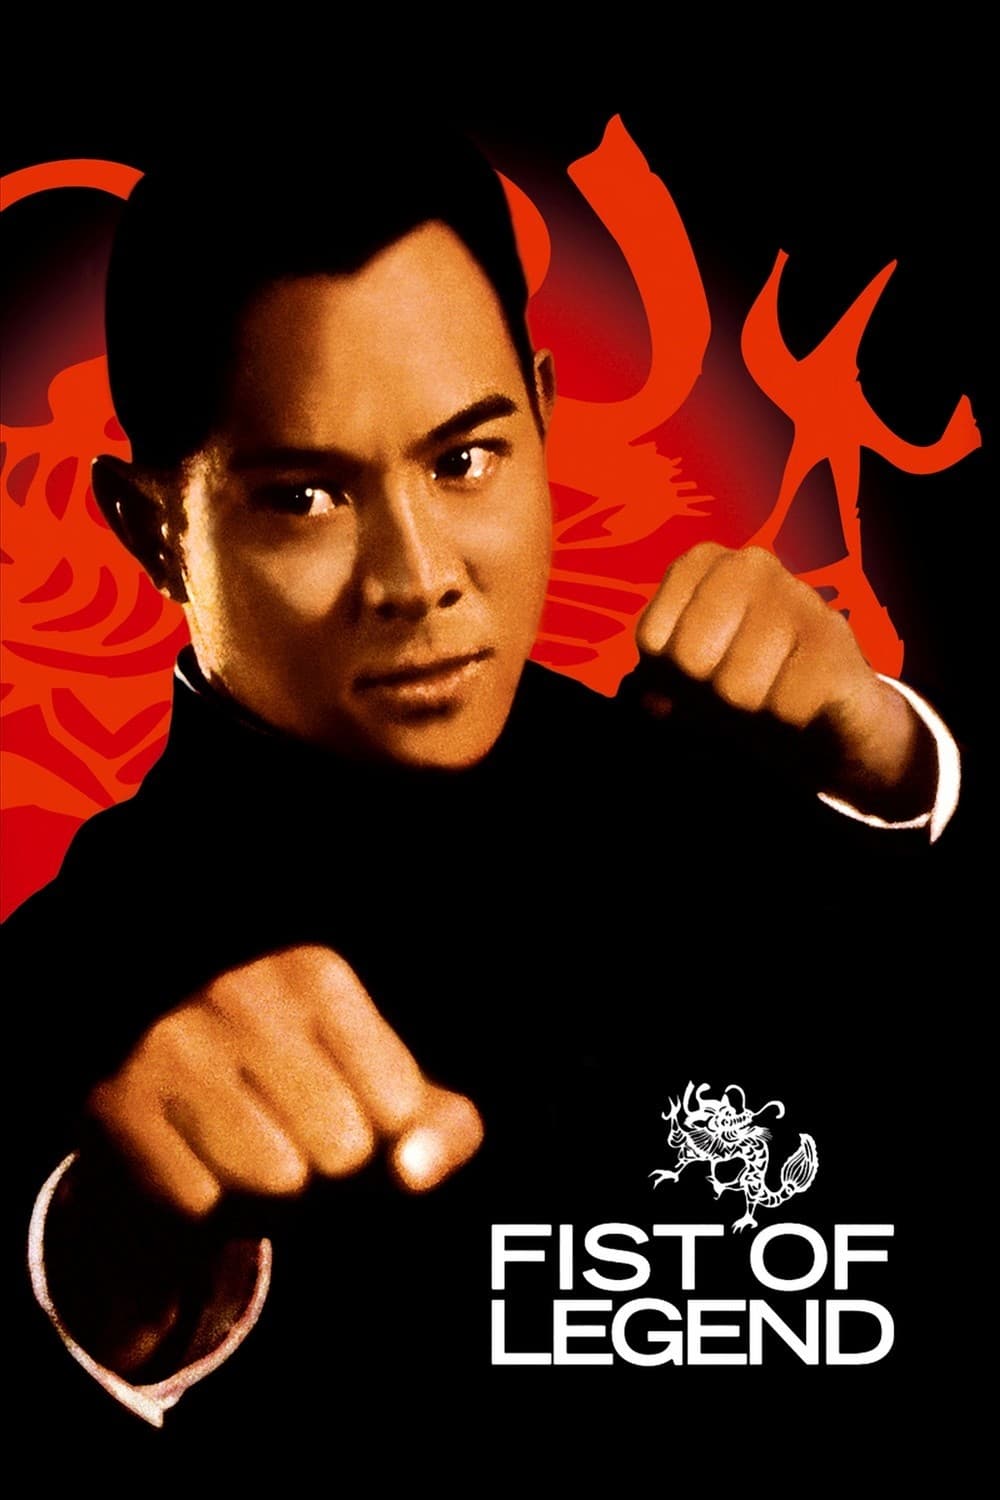 Tinh Võ Anh Hùng (Fist of Legend) [1994]